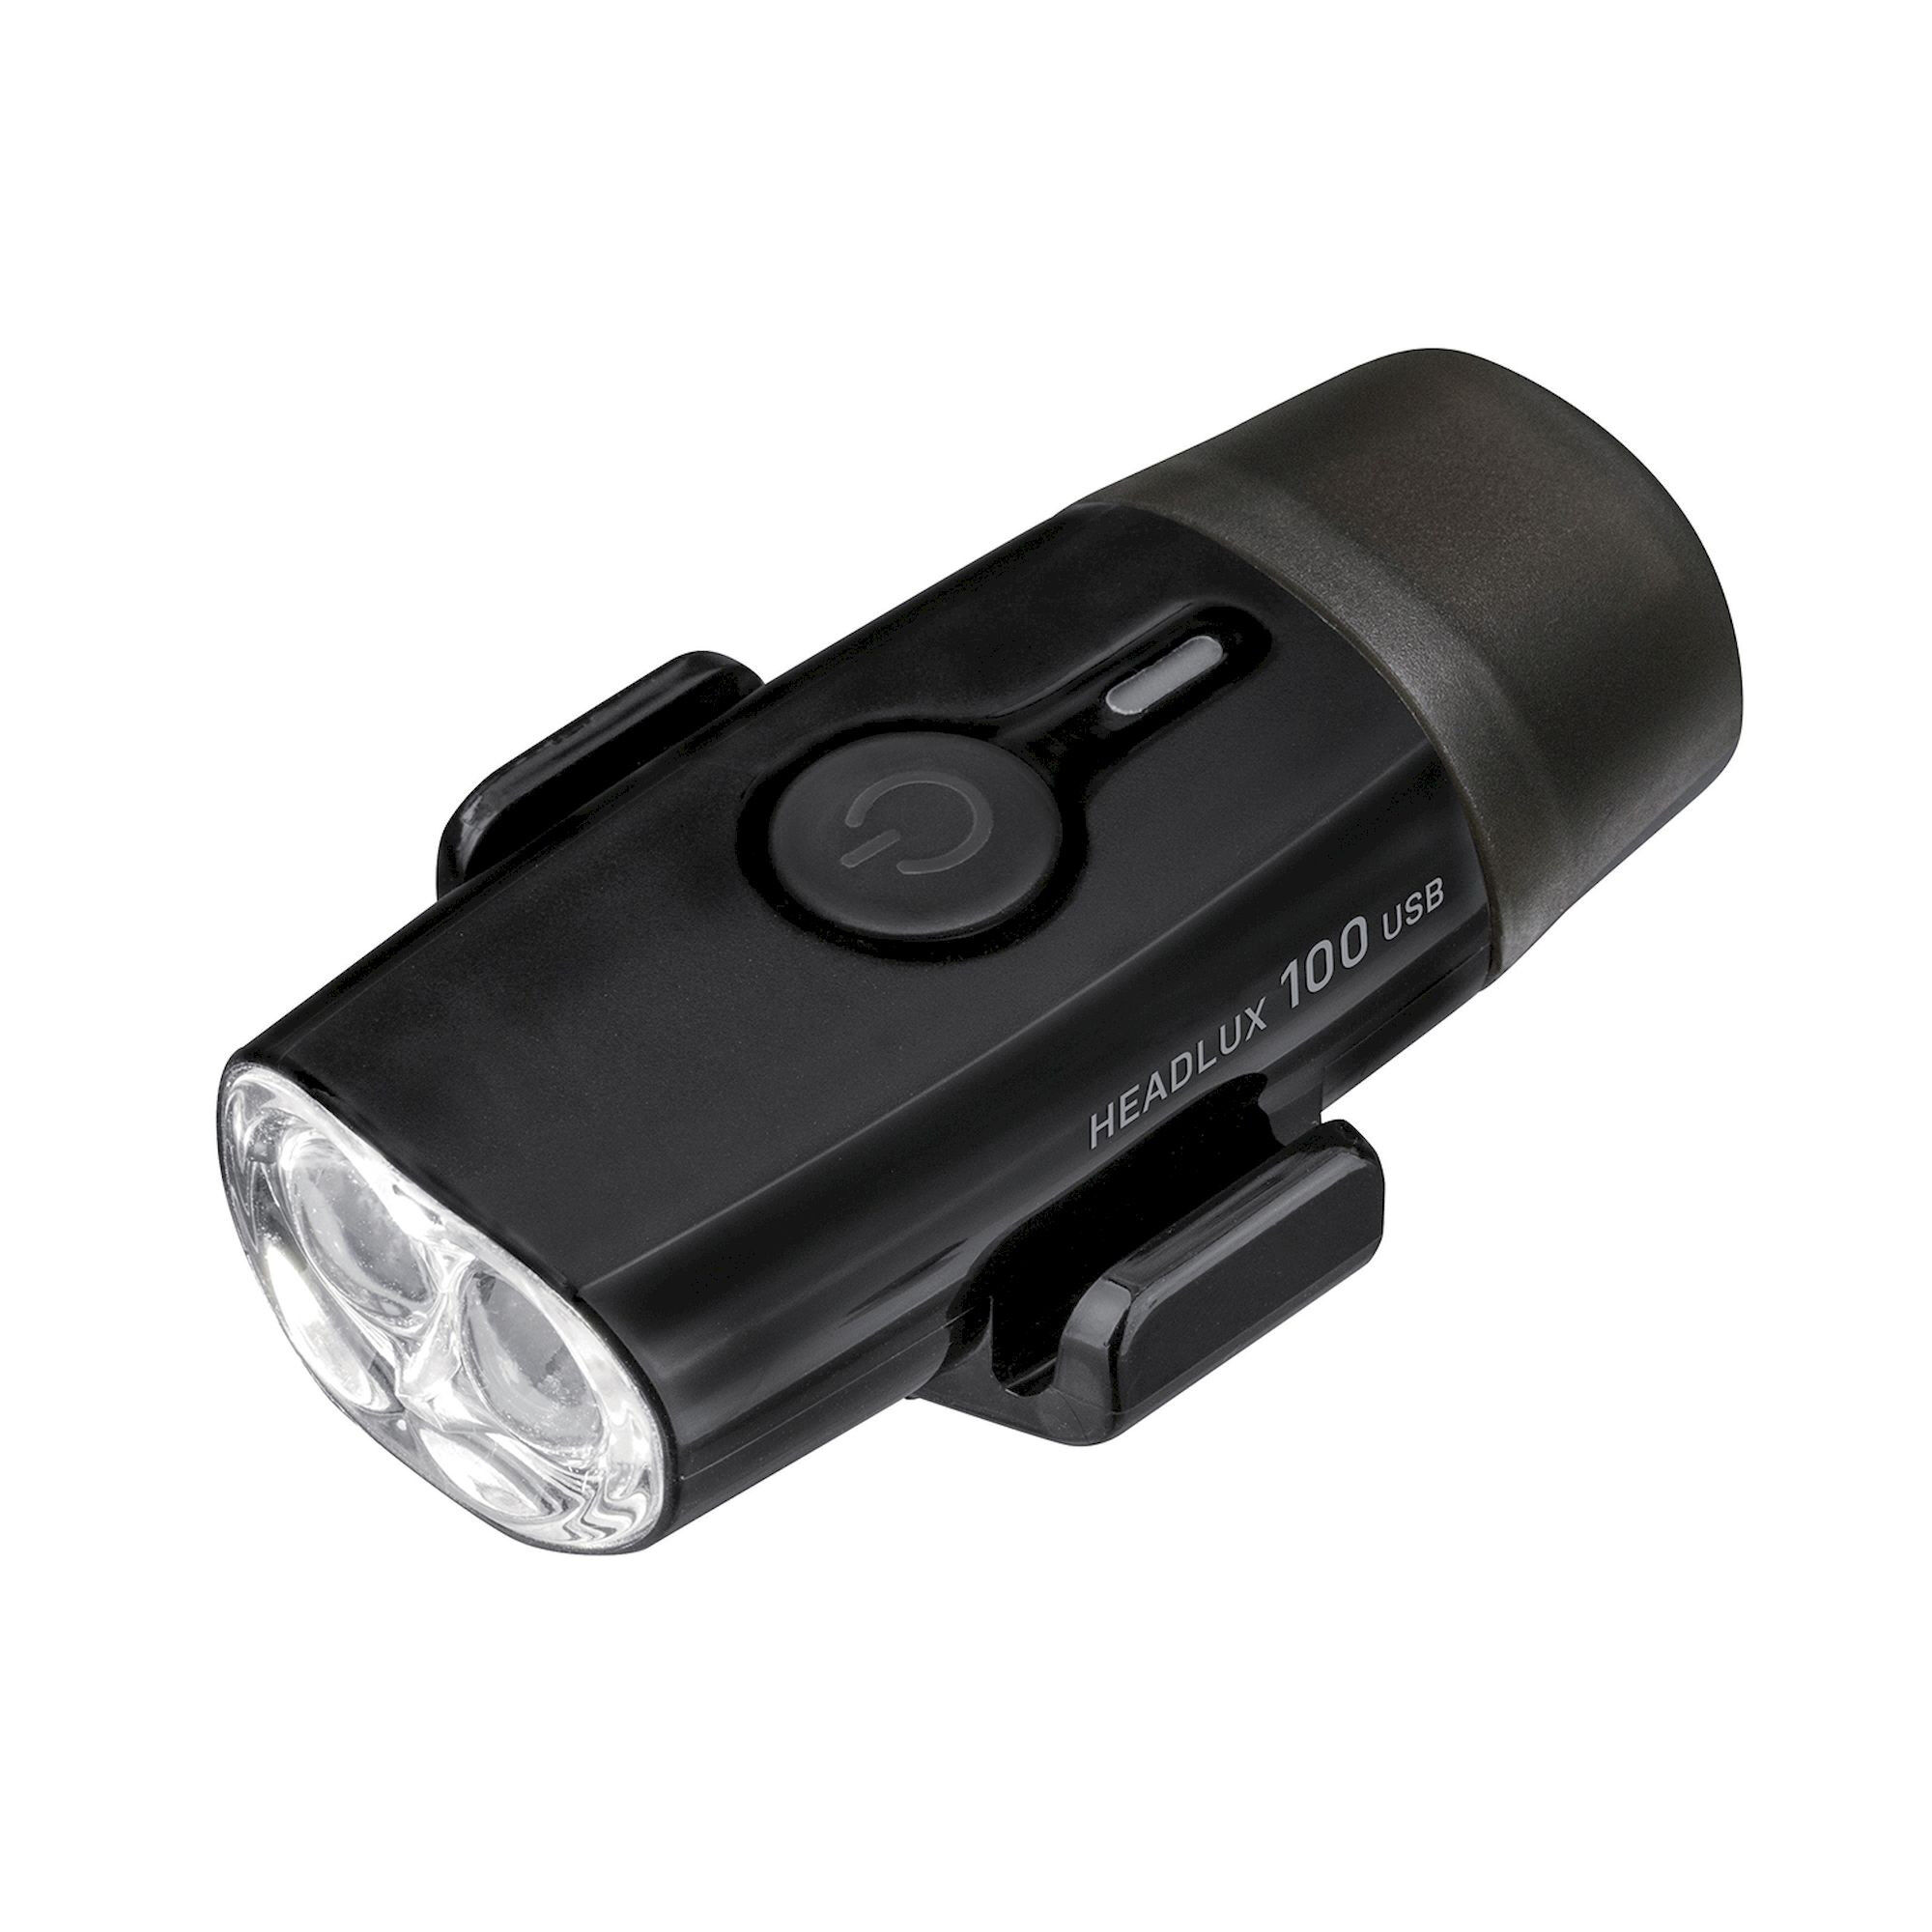 Topeak HeadLux 100 USB - Lampe avant vélo | Hardloop